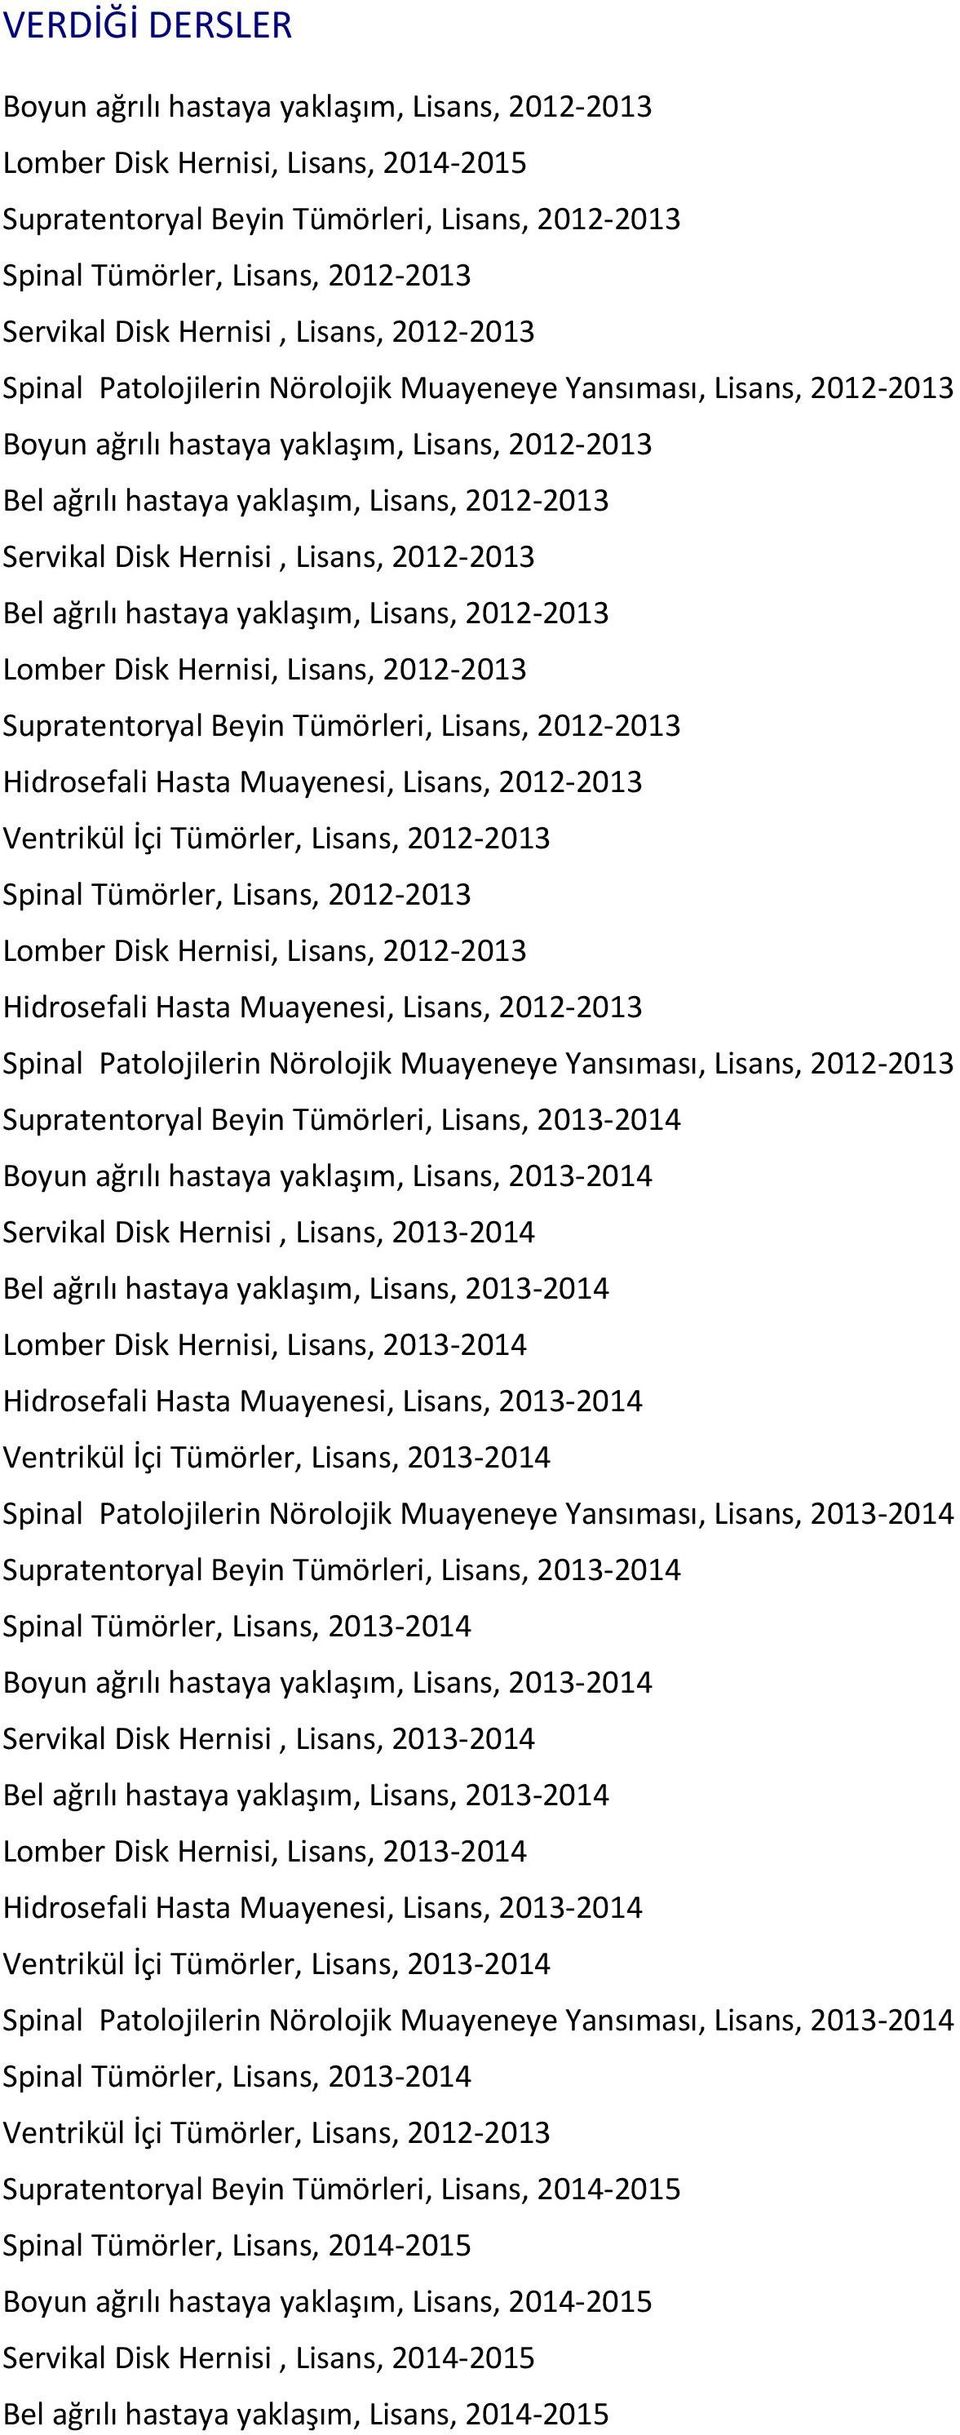 Servikal Disk Hernisi, Lisans, 2012-2013 Bel ağrılı hastaya yaklaşım, Lisans, 2012-2013 Lomber Disk Hernisi, Lisans, 2012-2013 Supratentoryal Beyin Tümörleri, Lisans, 2012-2013 Hidrosefali Hasta